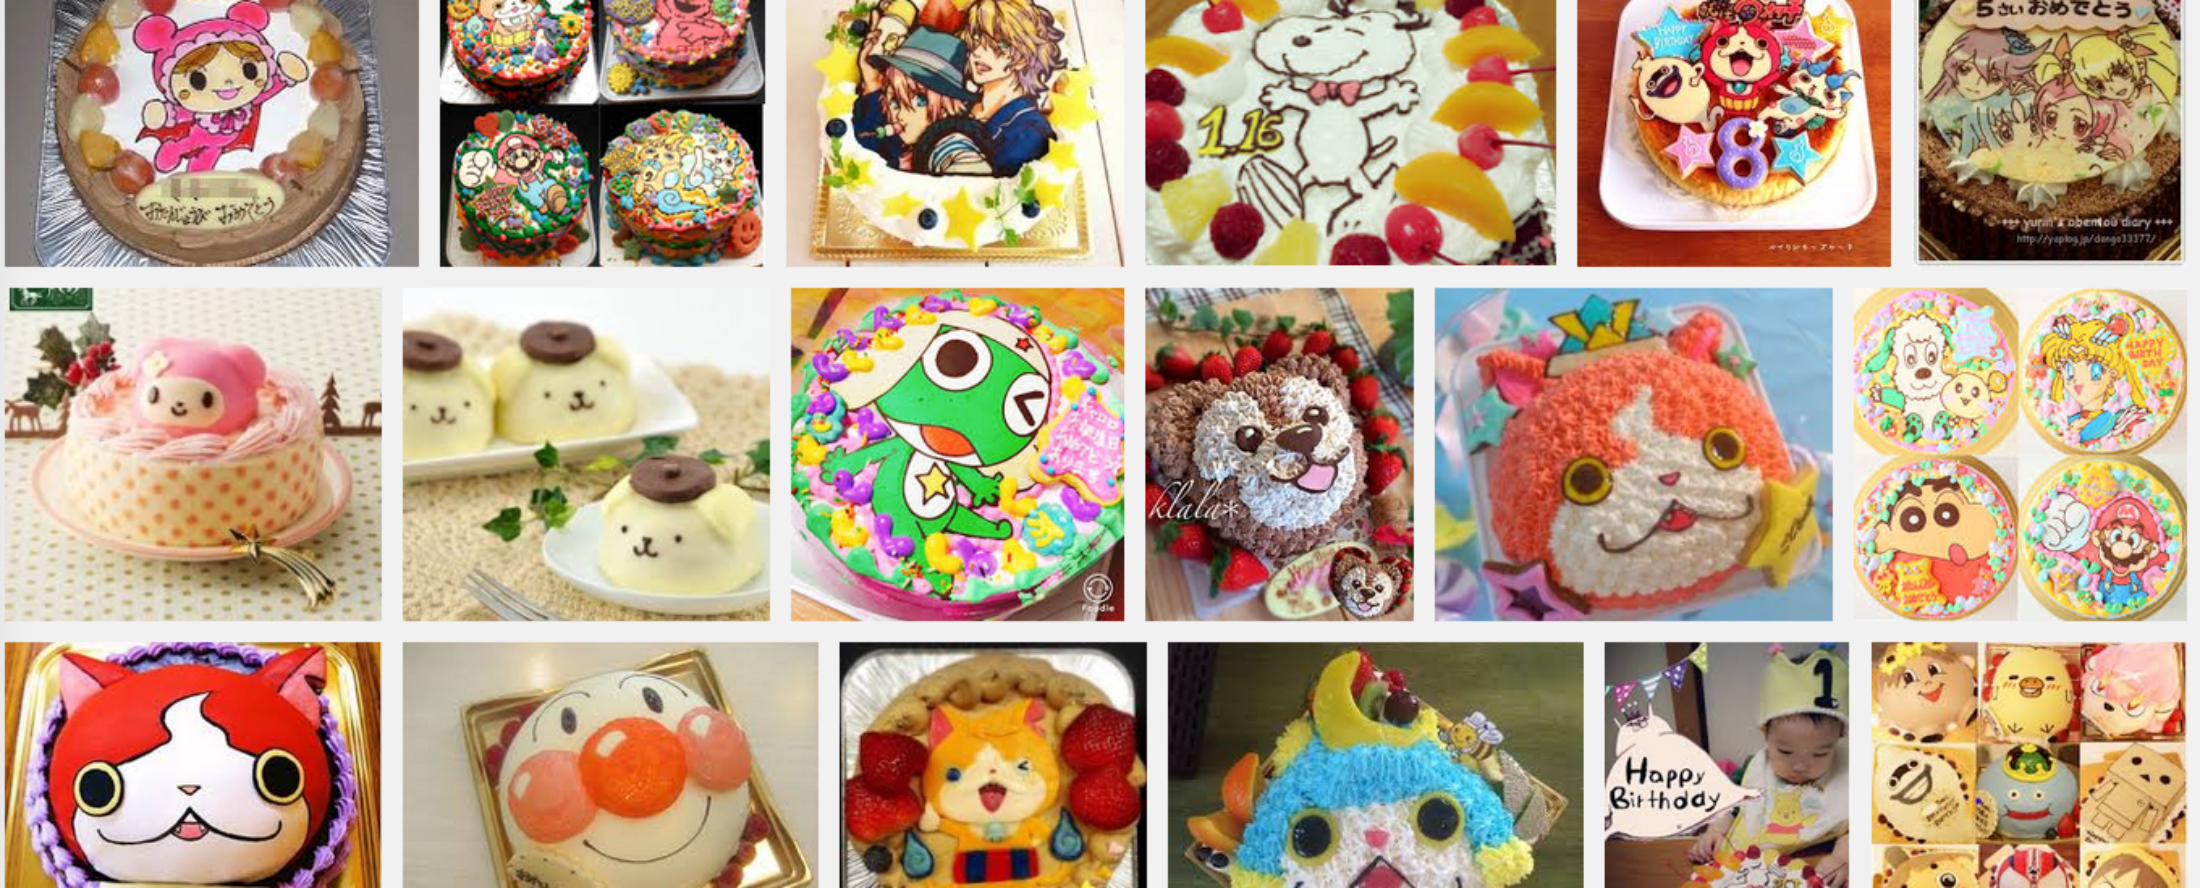 キャラクターケーキが注文できる埼玉県のケーキ店 キャラケーキ通販ランキング